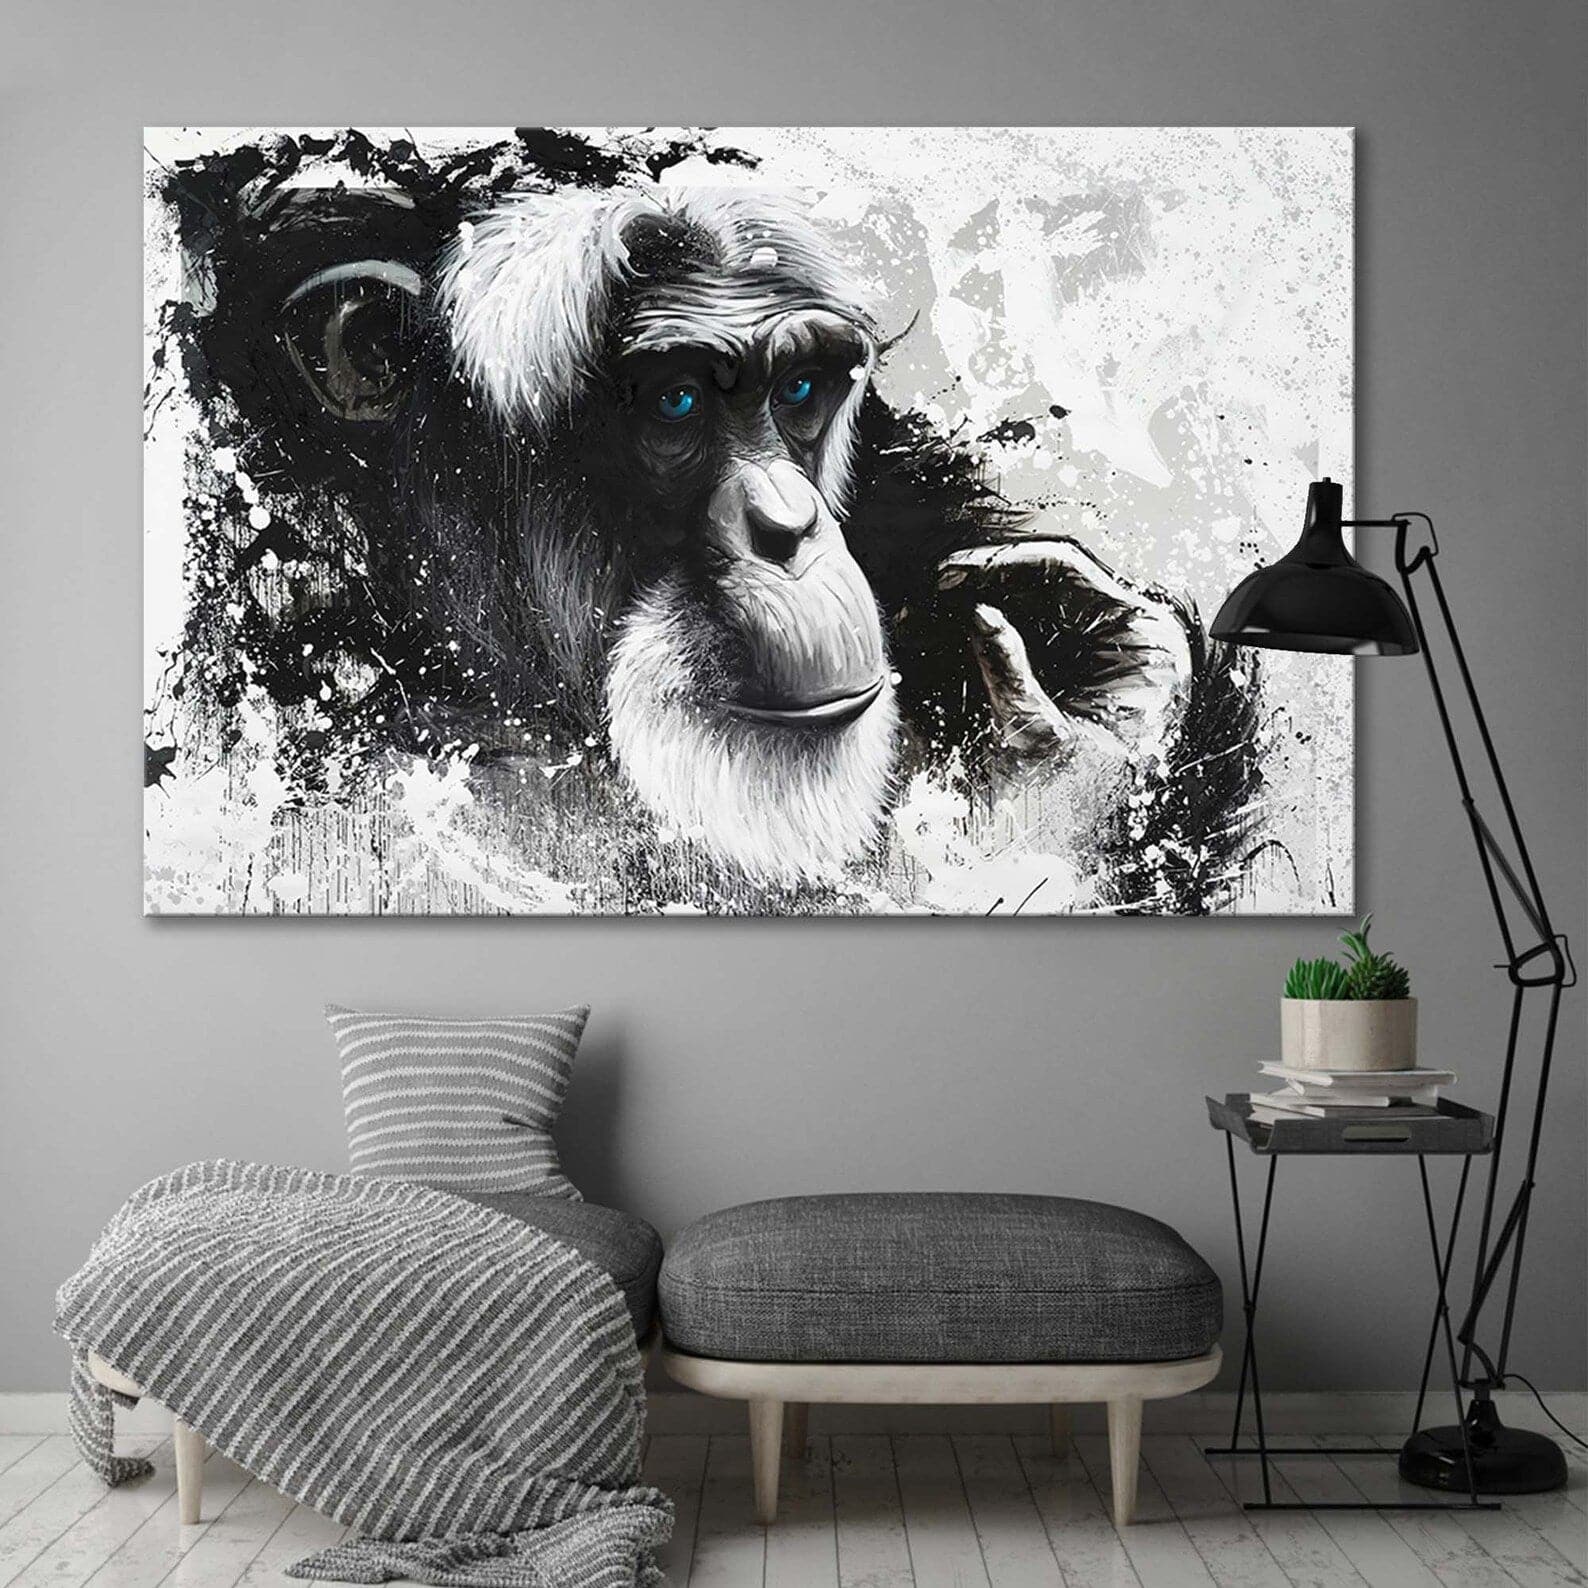 Framed 1 Panel - Monkey